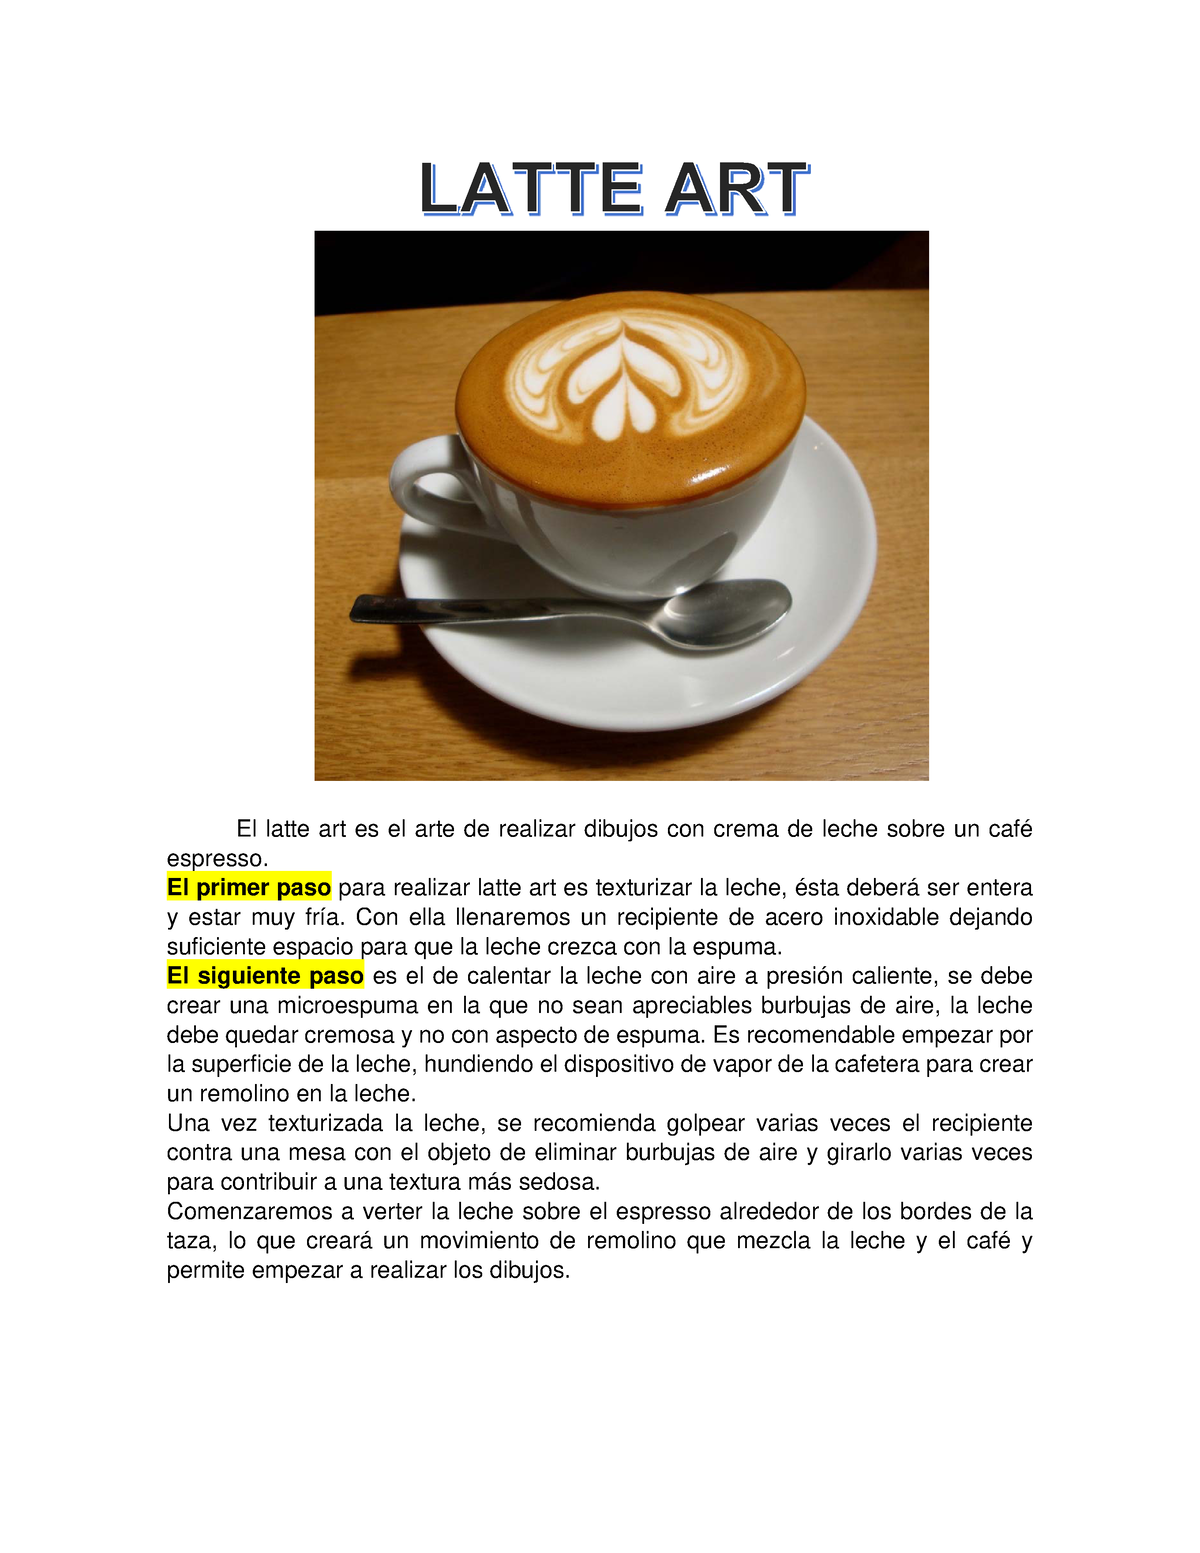 Cerrar La Mano De Barista Hacer Café Caliente Tazas De Latte Arte Y Jarra  De Leche De Espuma Y Hay Accesorios De Cafetera Imagen de archivo - Imagen  de plano, concepto: 235924743